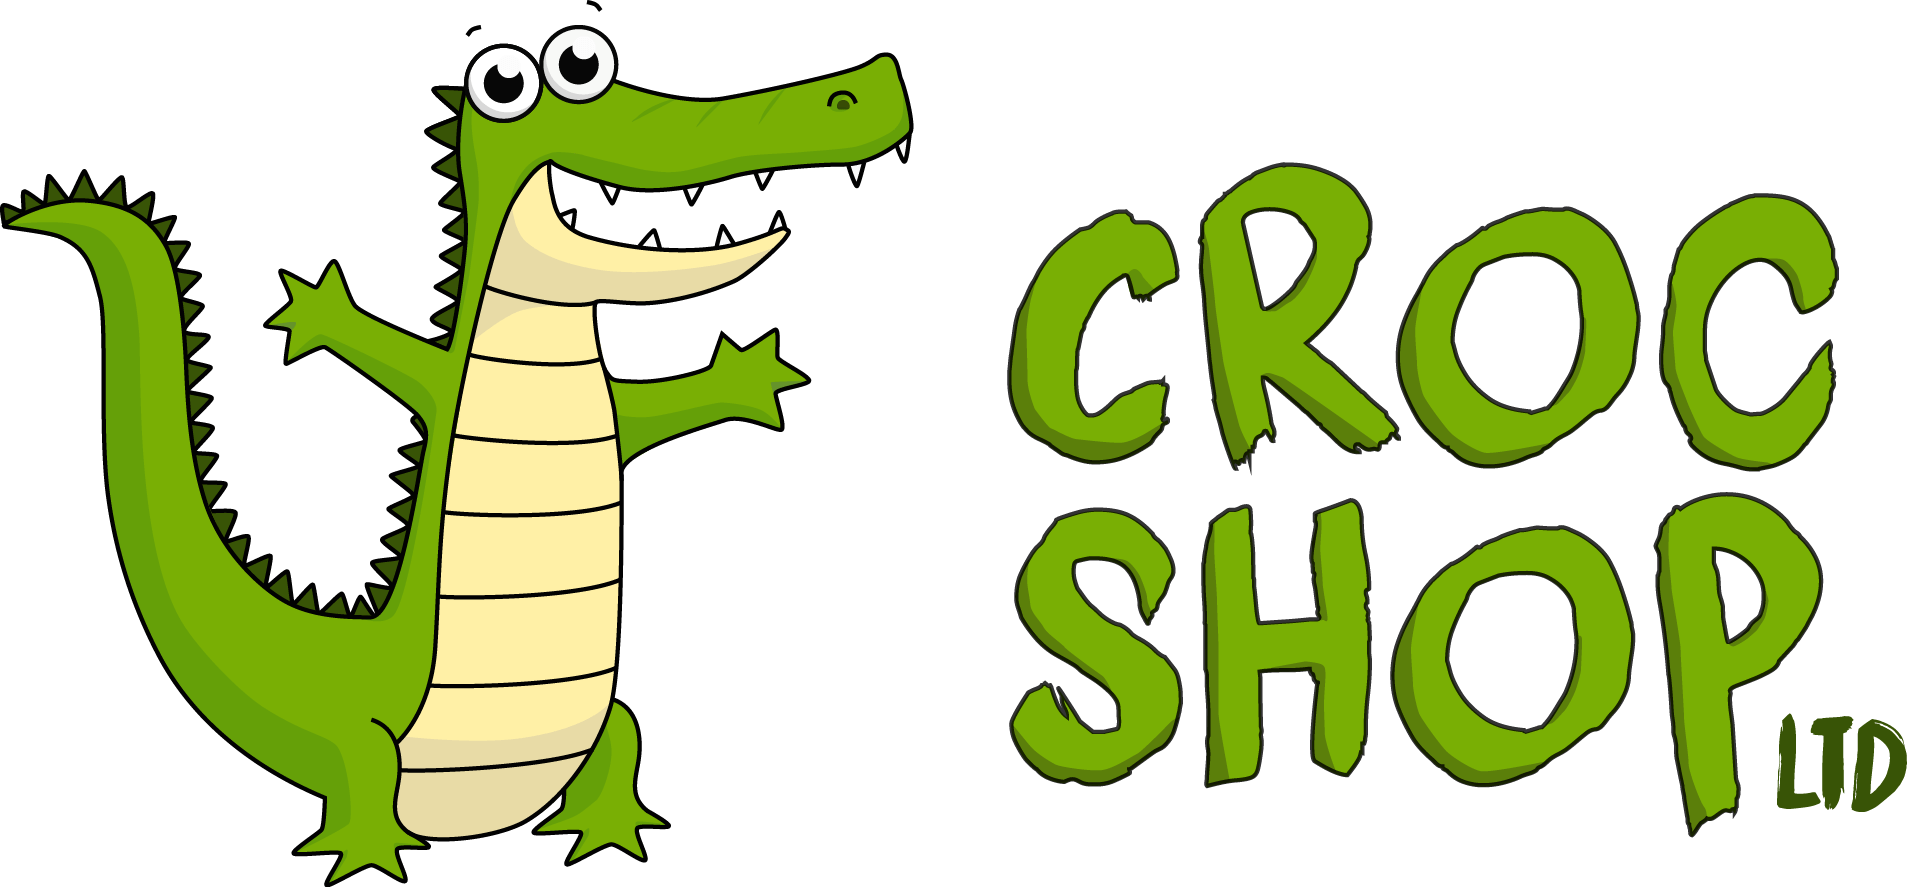 the croc shop uk